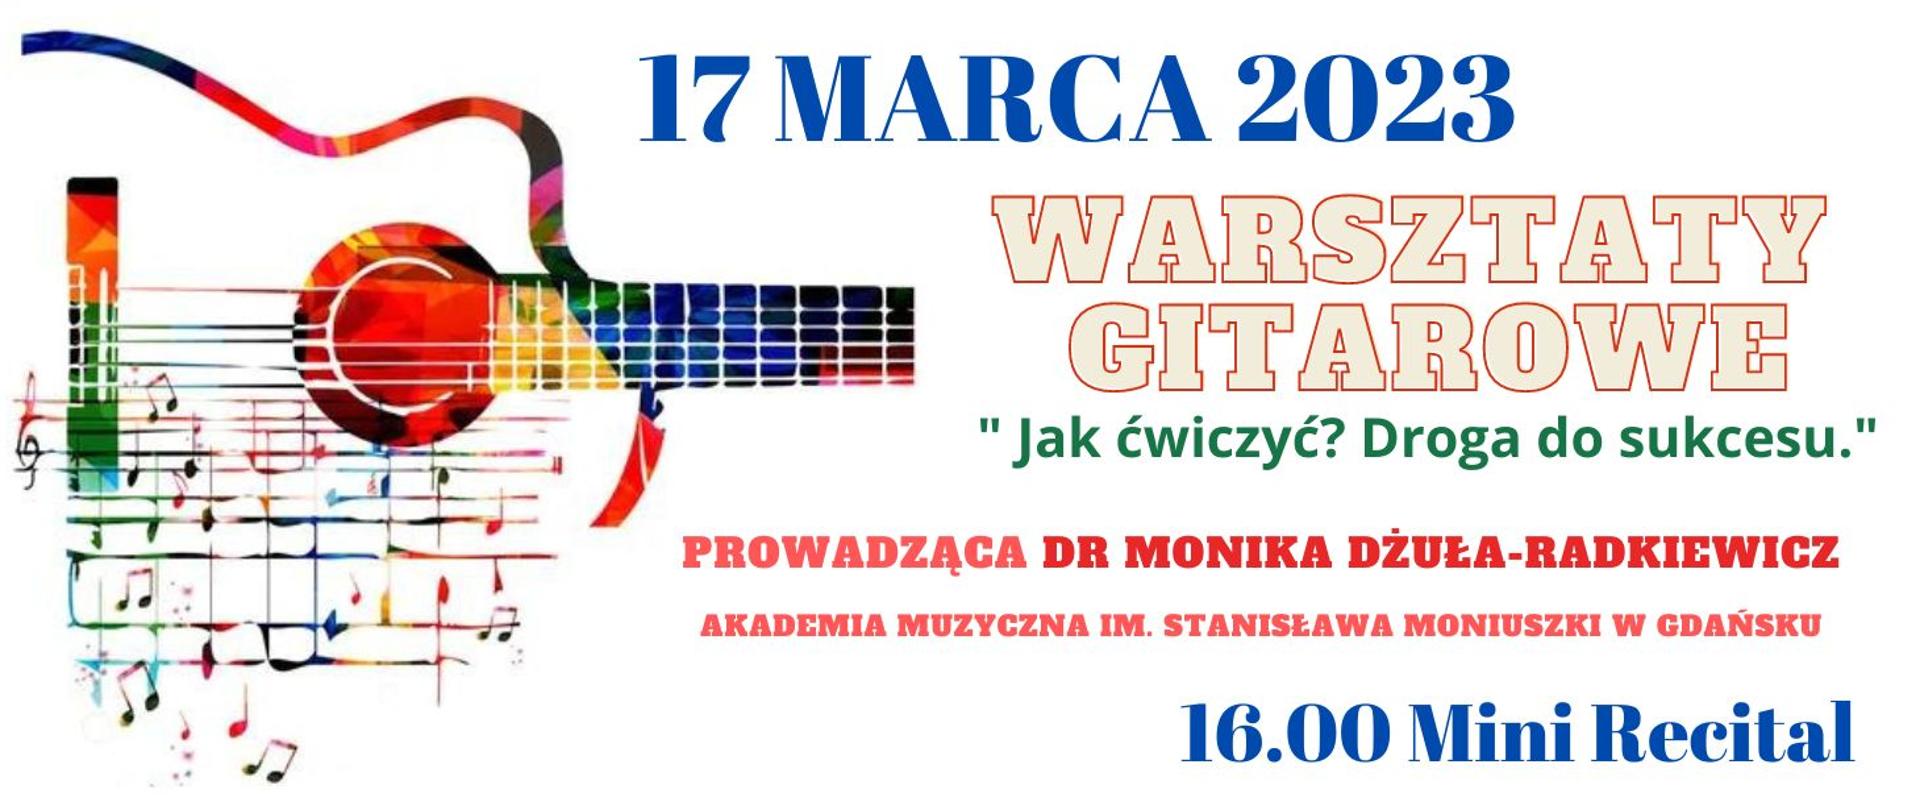 panorama informująca o warsztatach gitarowych w dniu 17.03.23 prowadzonych przez dr Monikę Dżułę - Radkiewicz. Z lewej strony kolorowa grafika fragmentu gitary wraz z kolorowymi nutami. 